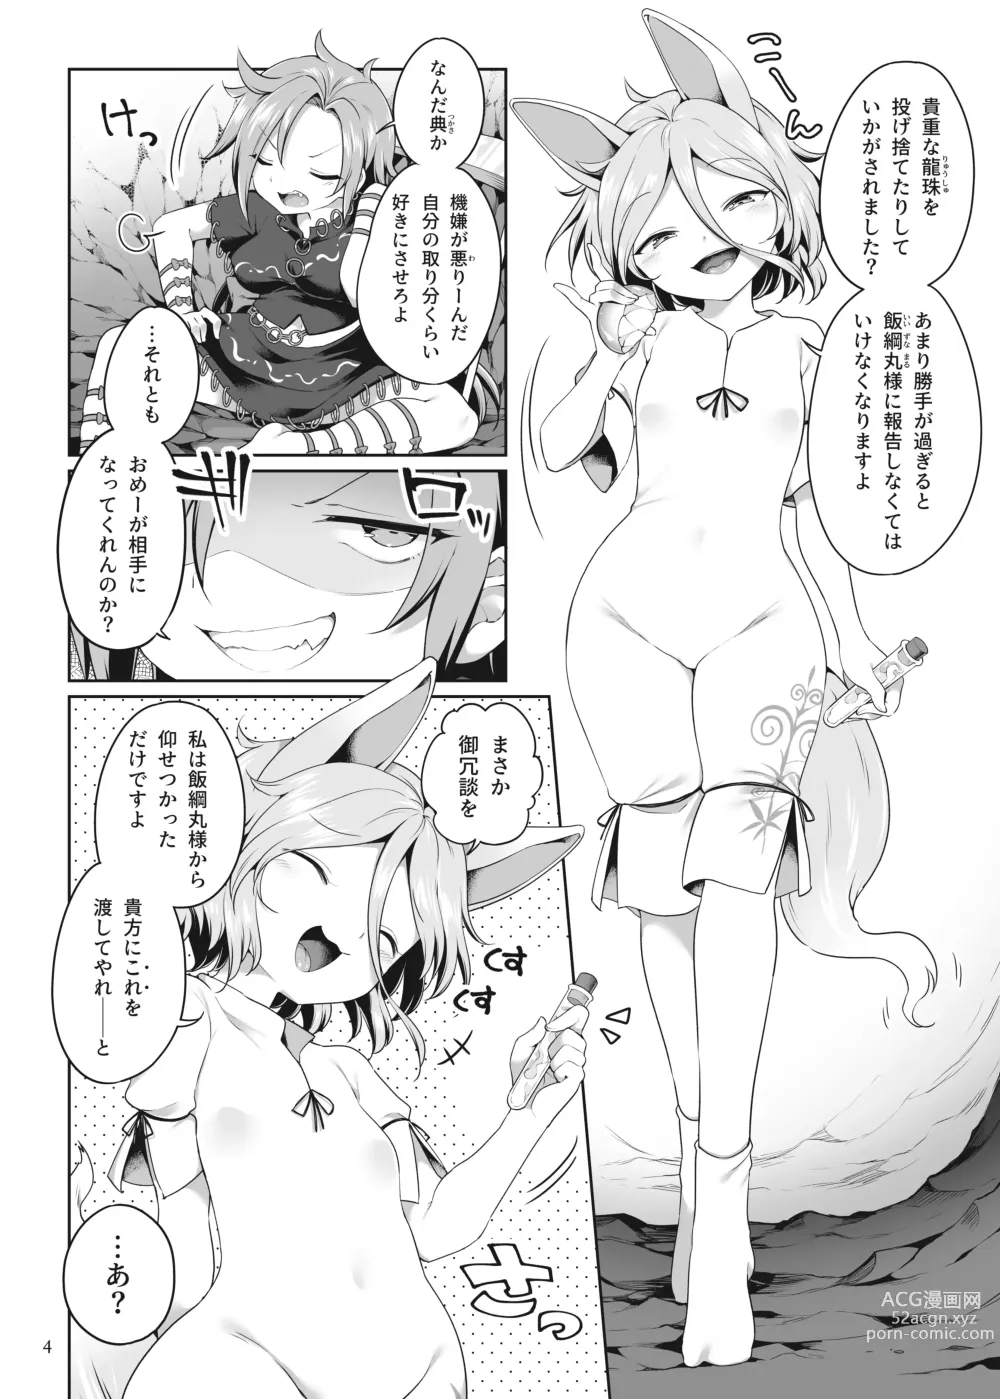 Page 4 of doujinshi Hitori Ona Mukade